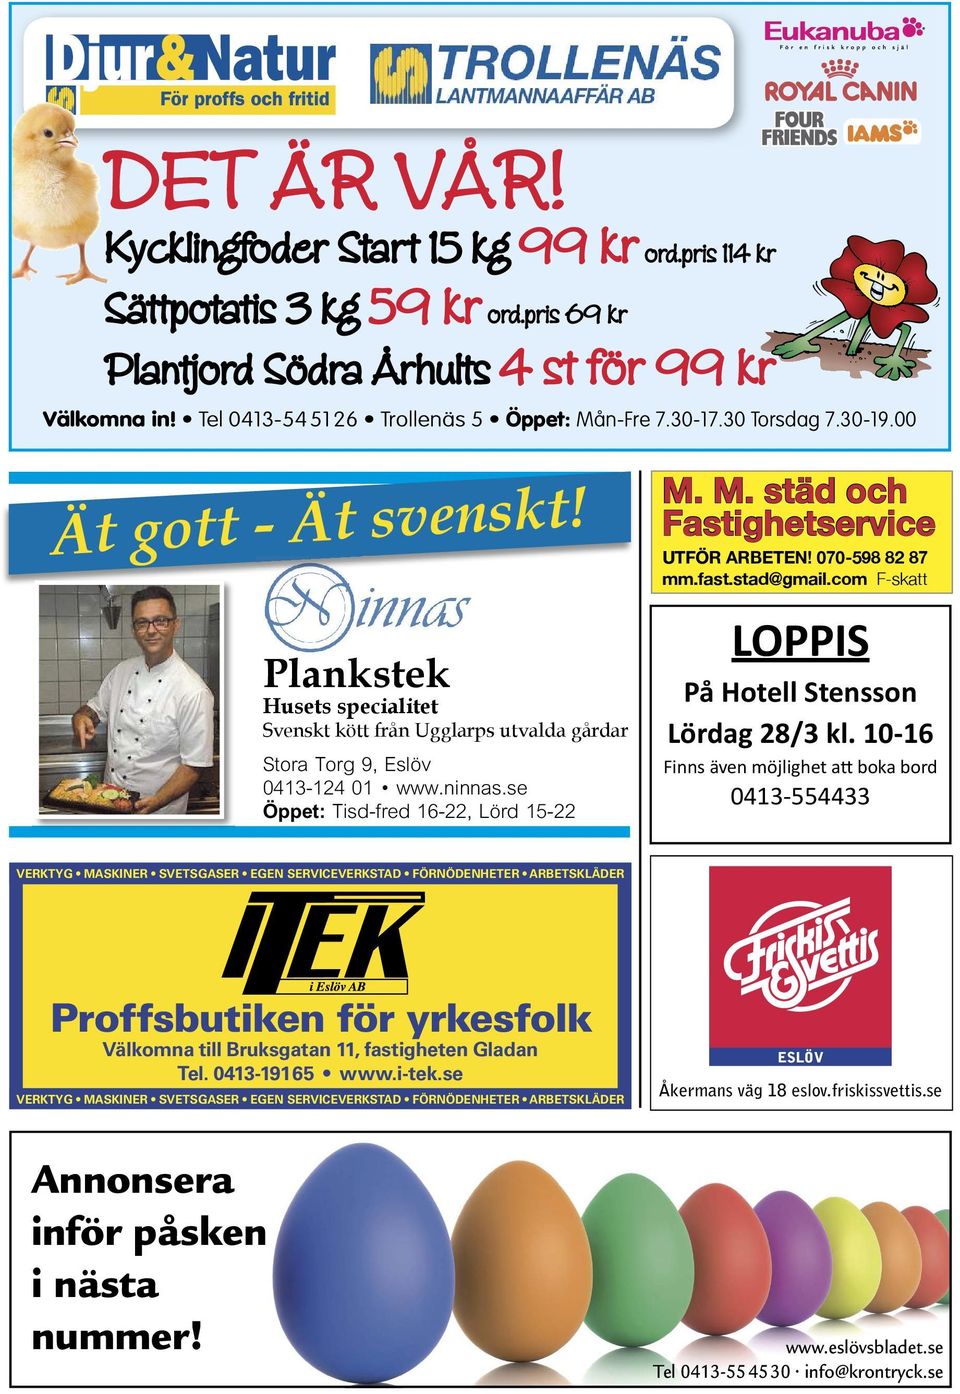 Plankstek Husets specialitet Svenskt kött från Ugglarps utvalda gårdar Nu! Stora Torg 9, Eslöv 0413-124 01 www.ninnas.